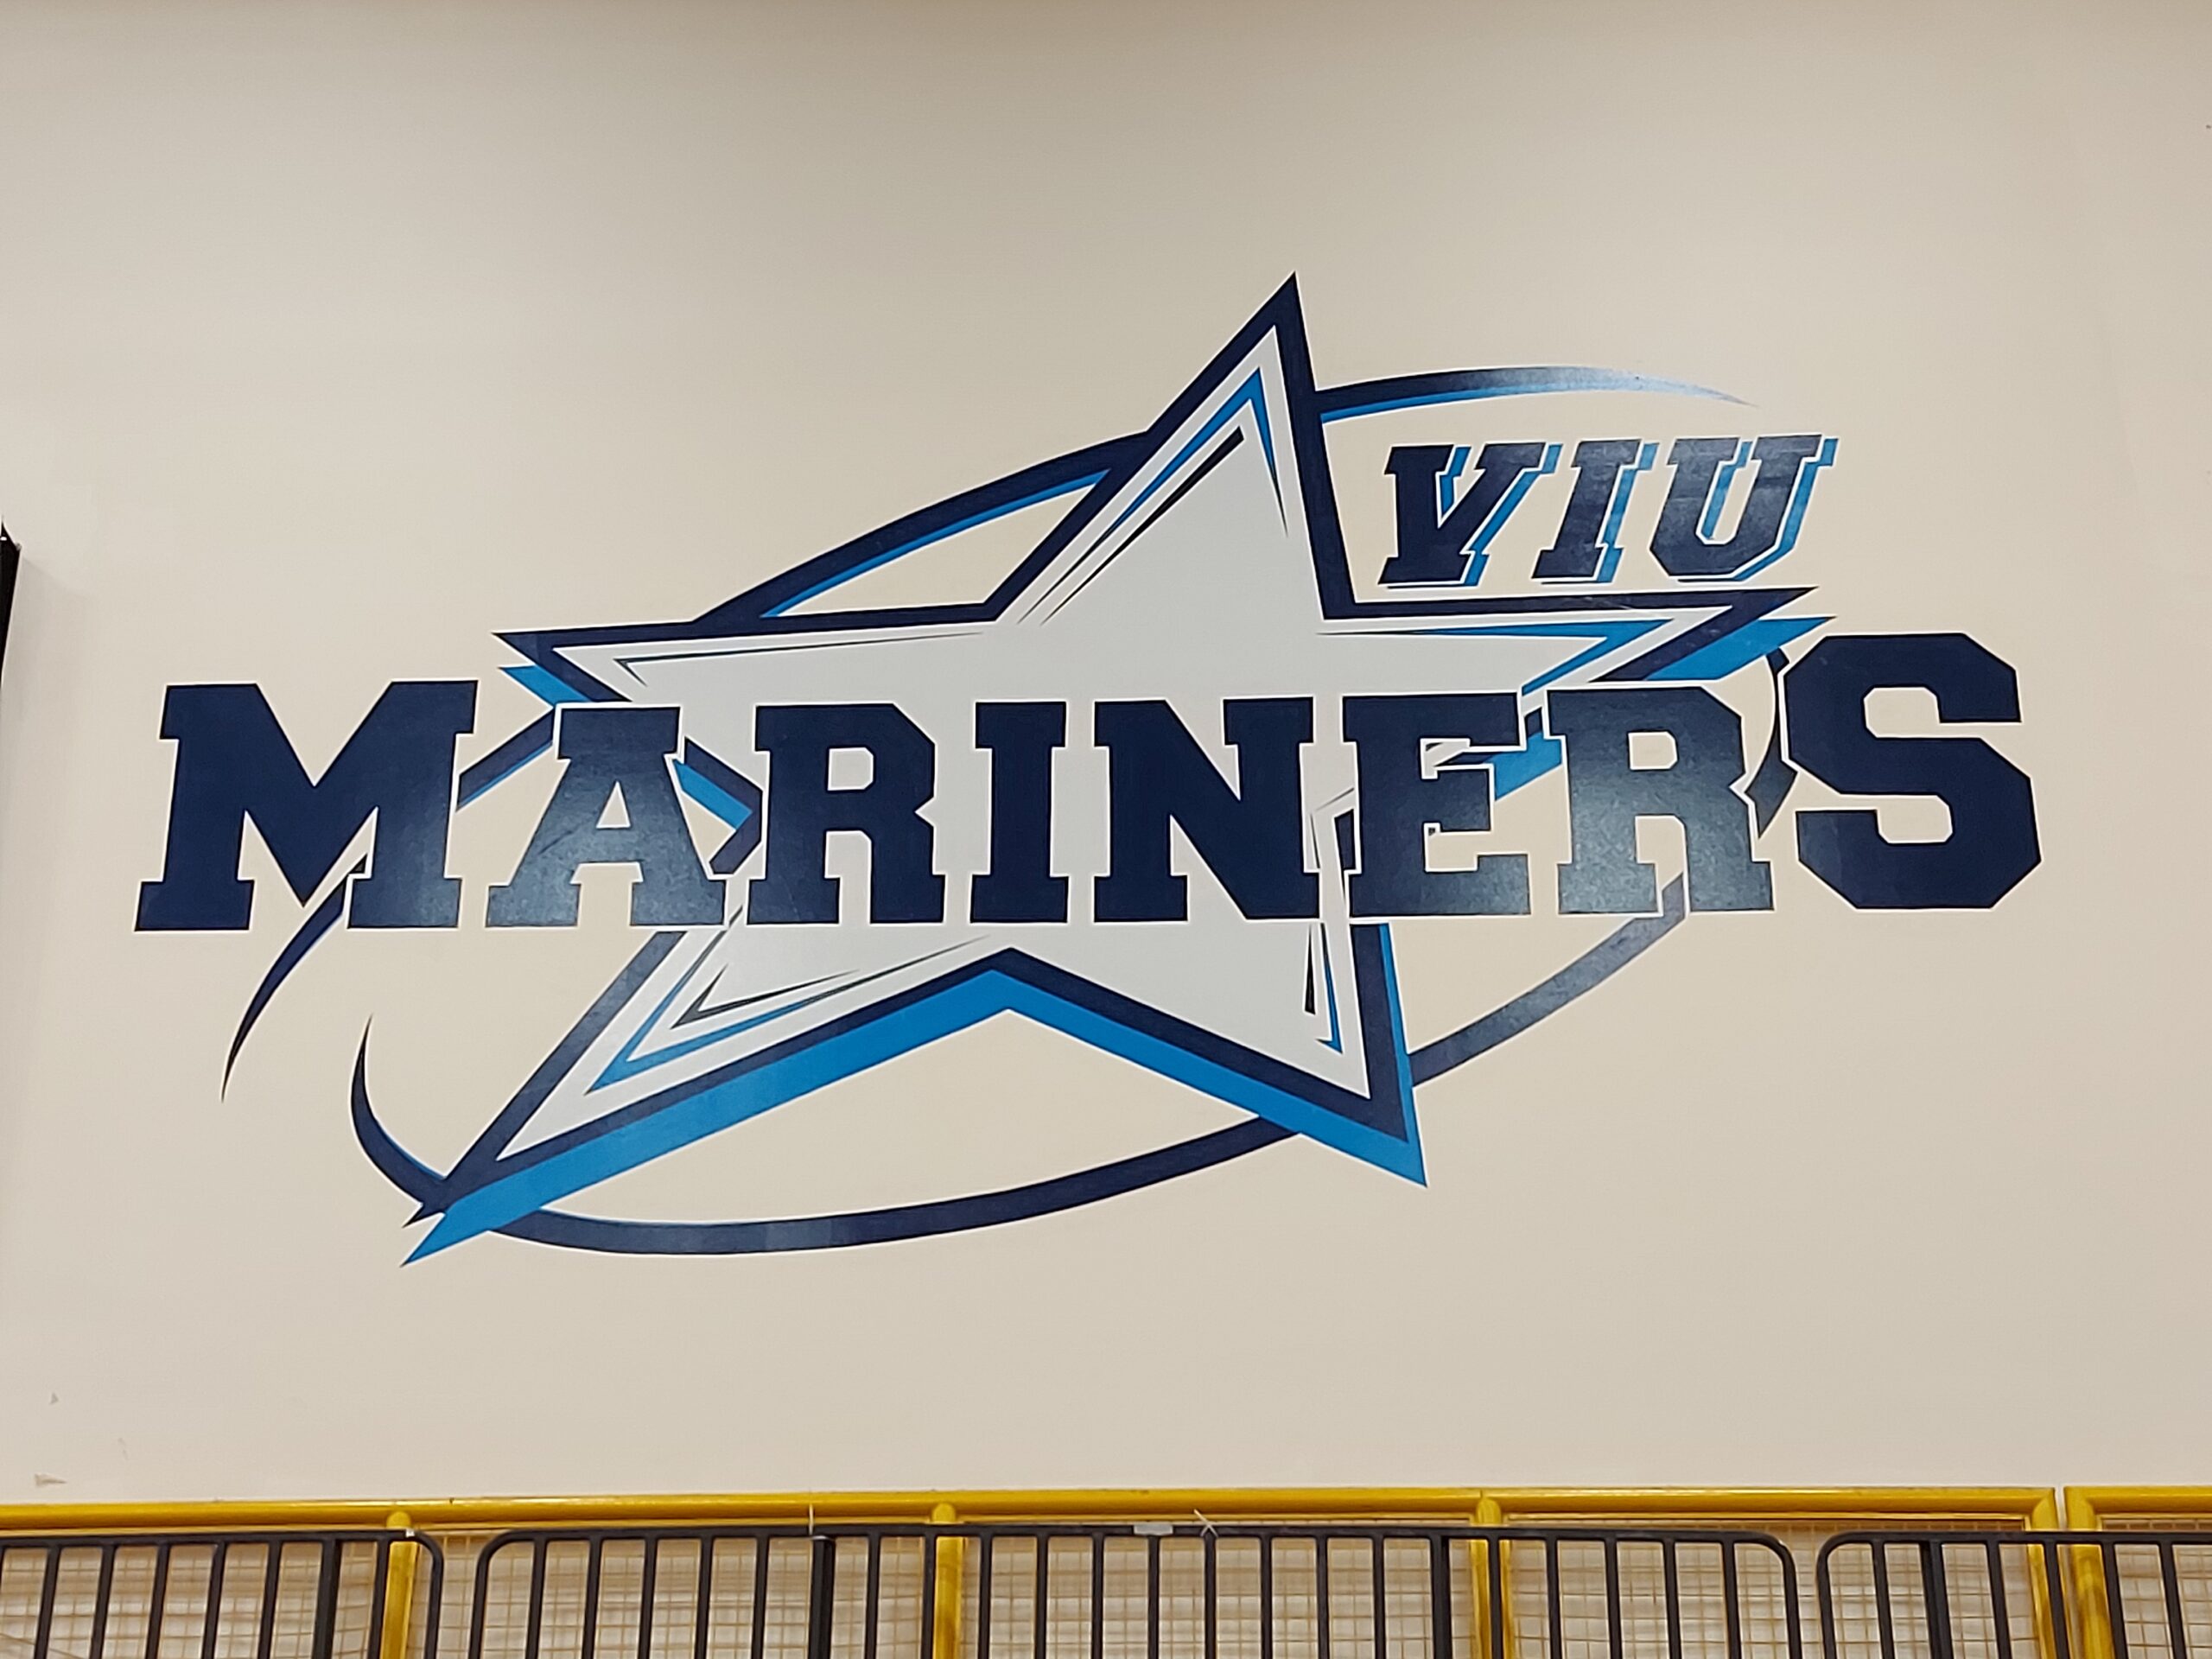 The VIU Mariners logo.